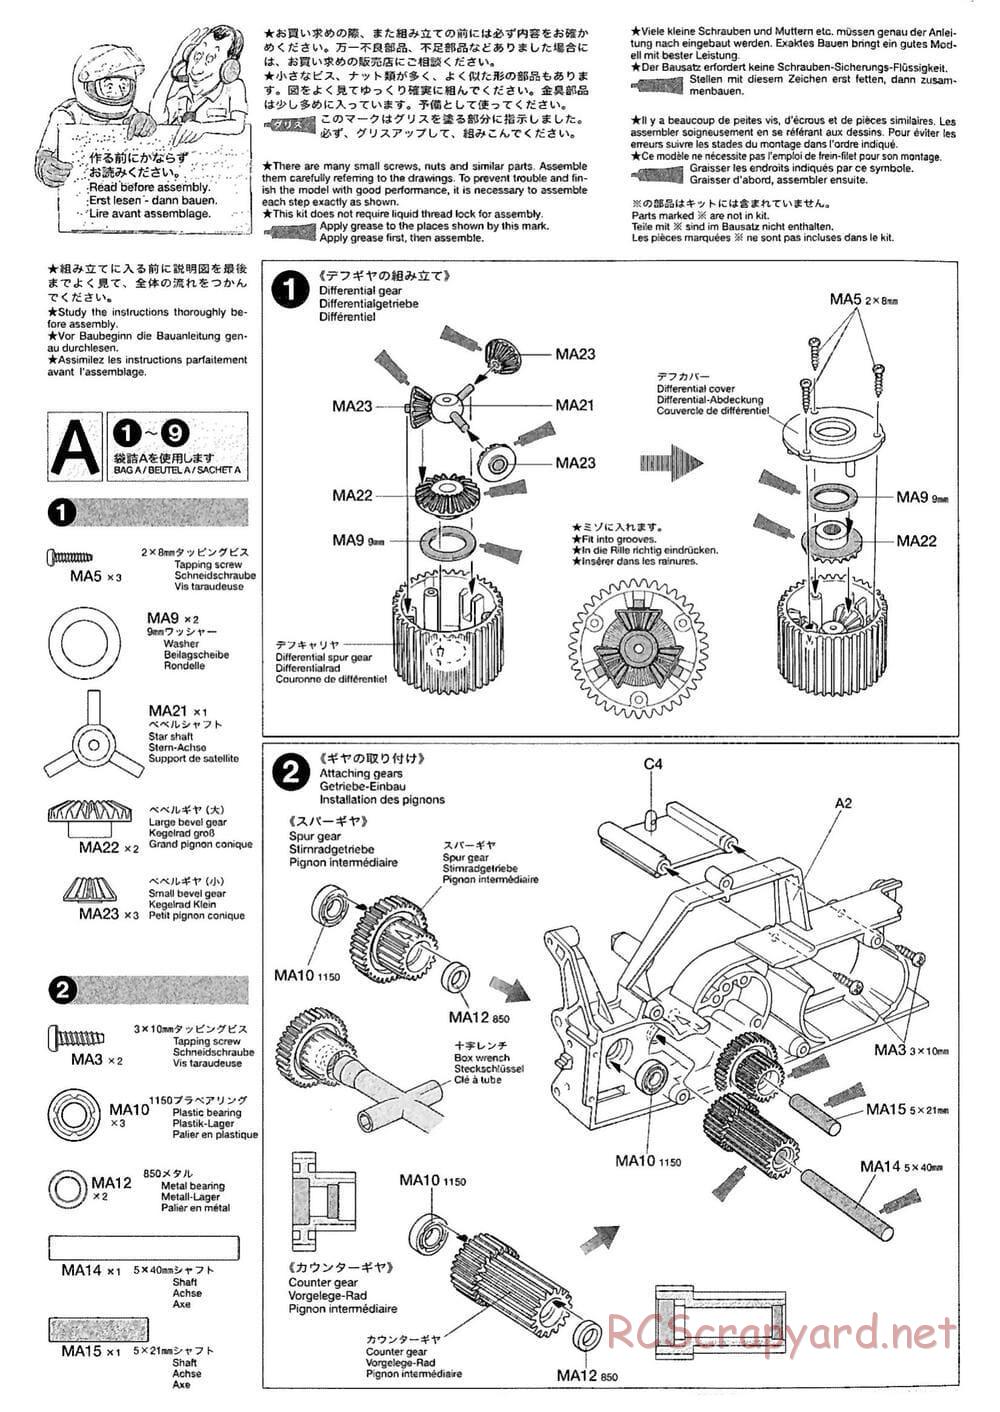 Tamiya - M-03M Chassis - Manual - Page 4